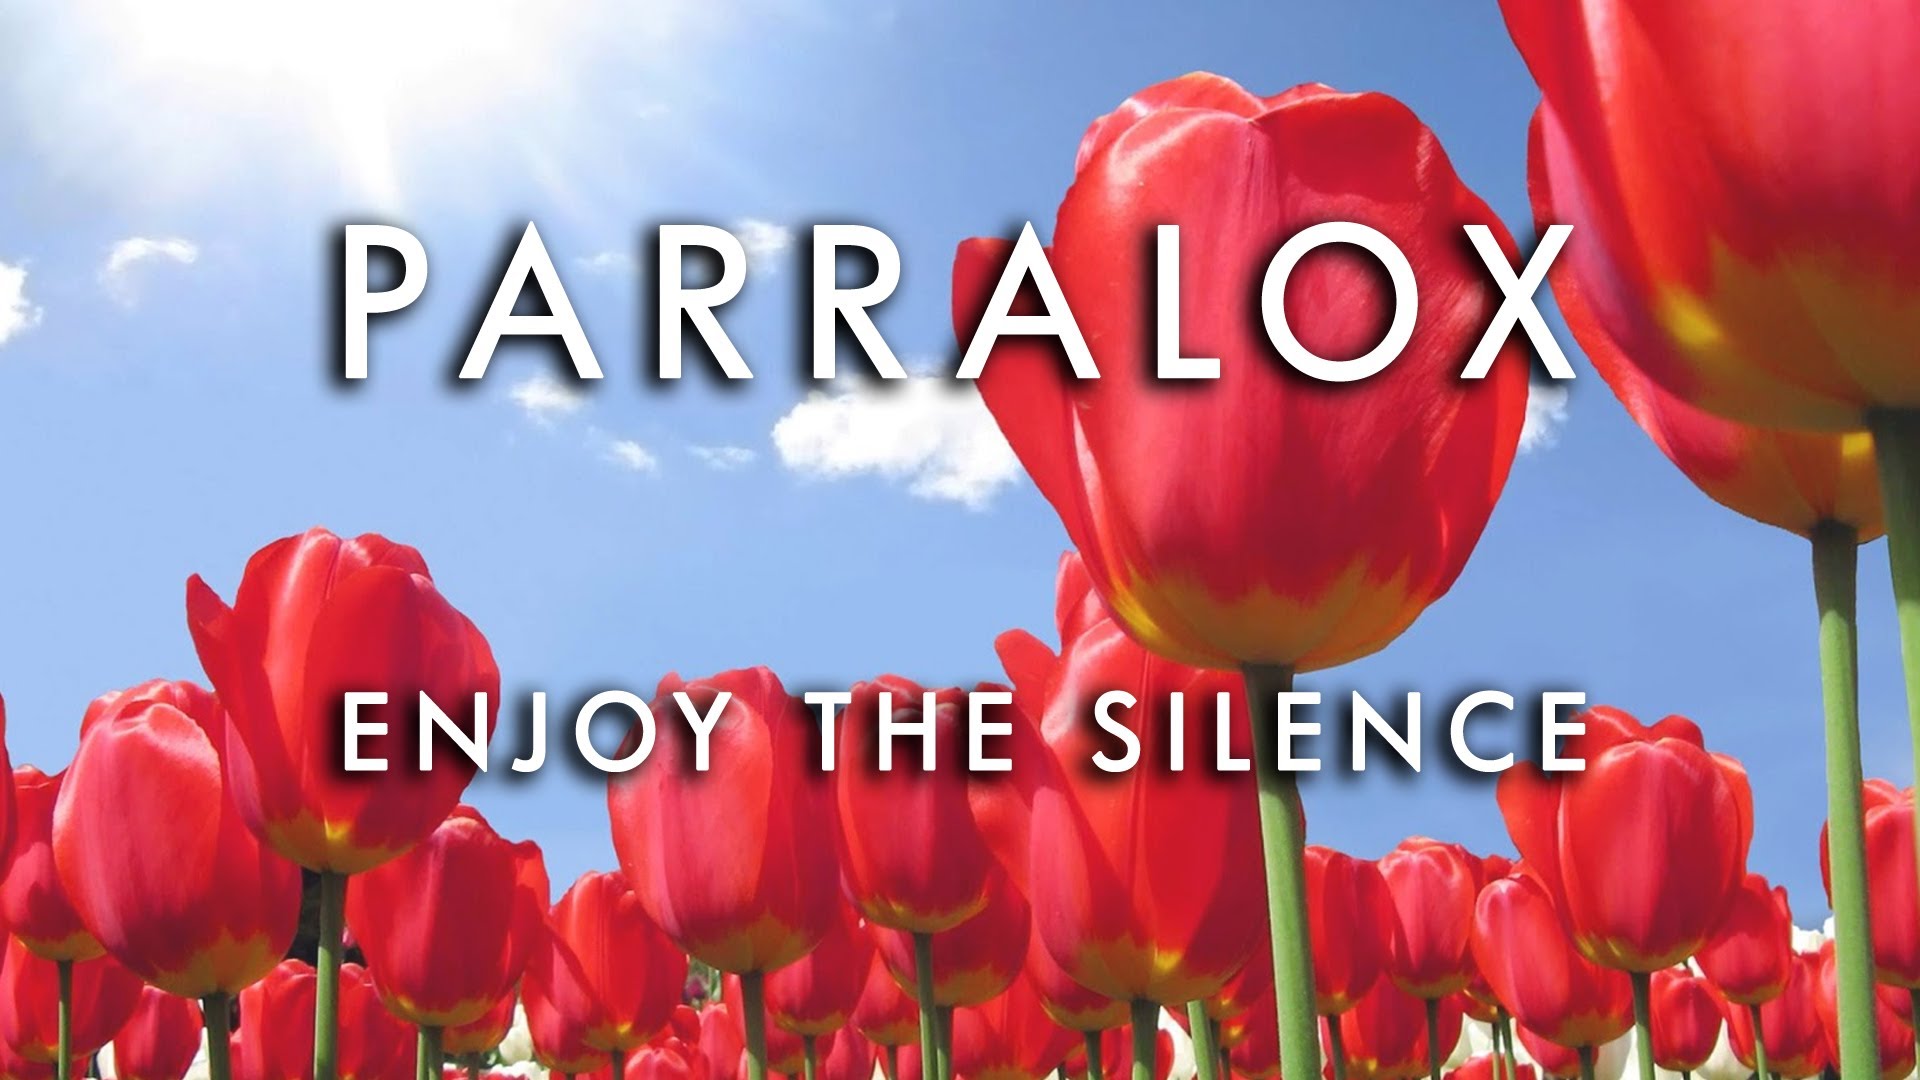 parralox enjoy the silence depec